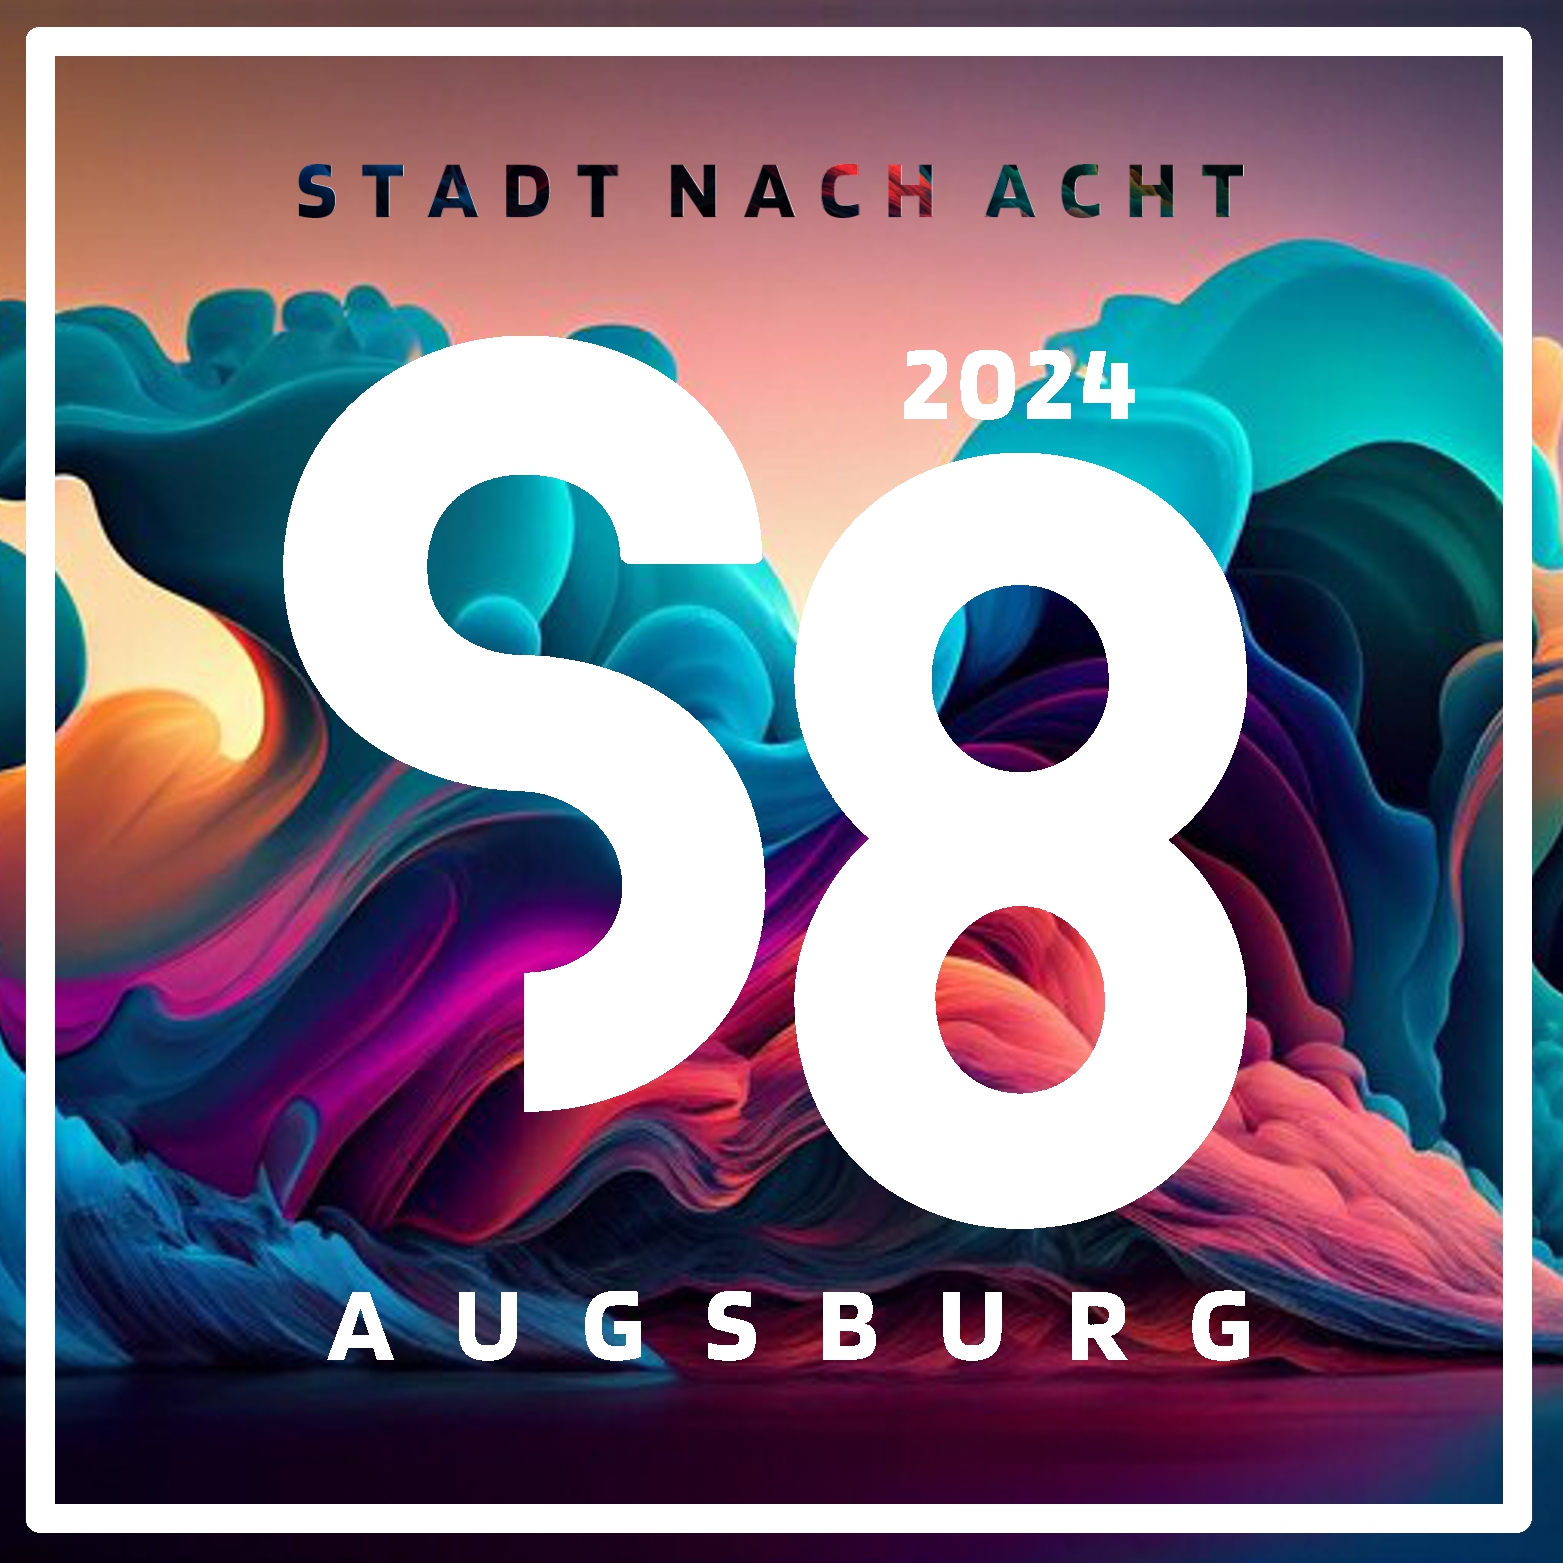 Stadt Nach Acht 2024 Augsburg | Second Cities